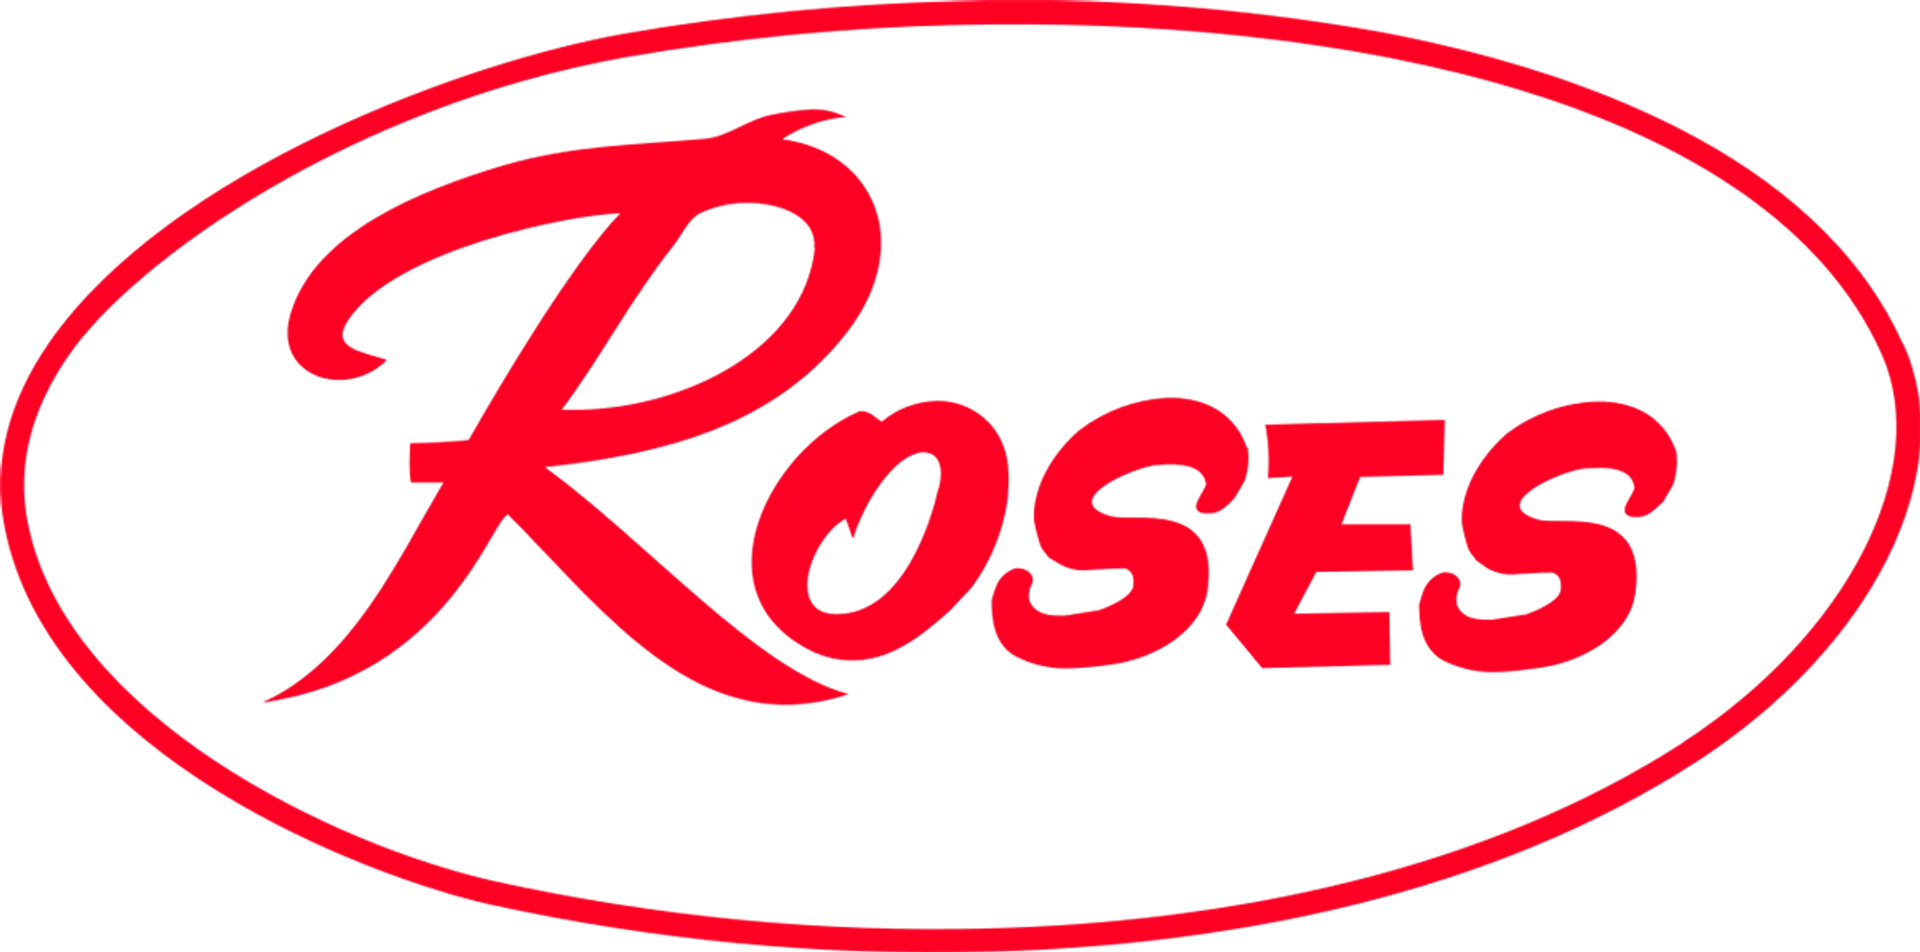 ROSES DISCOUNT SOTRE logo de catálogo